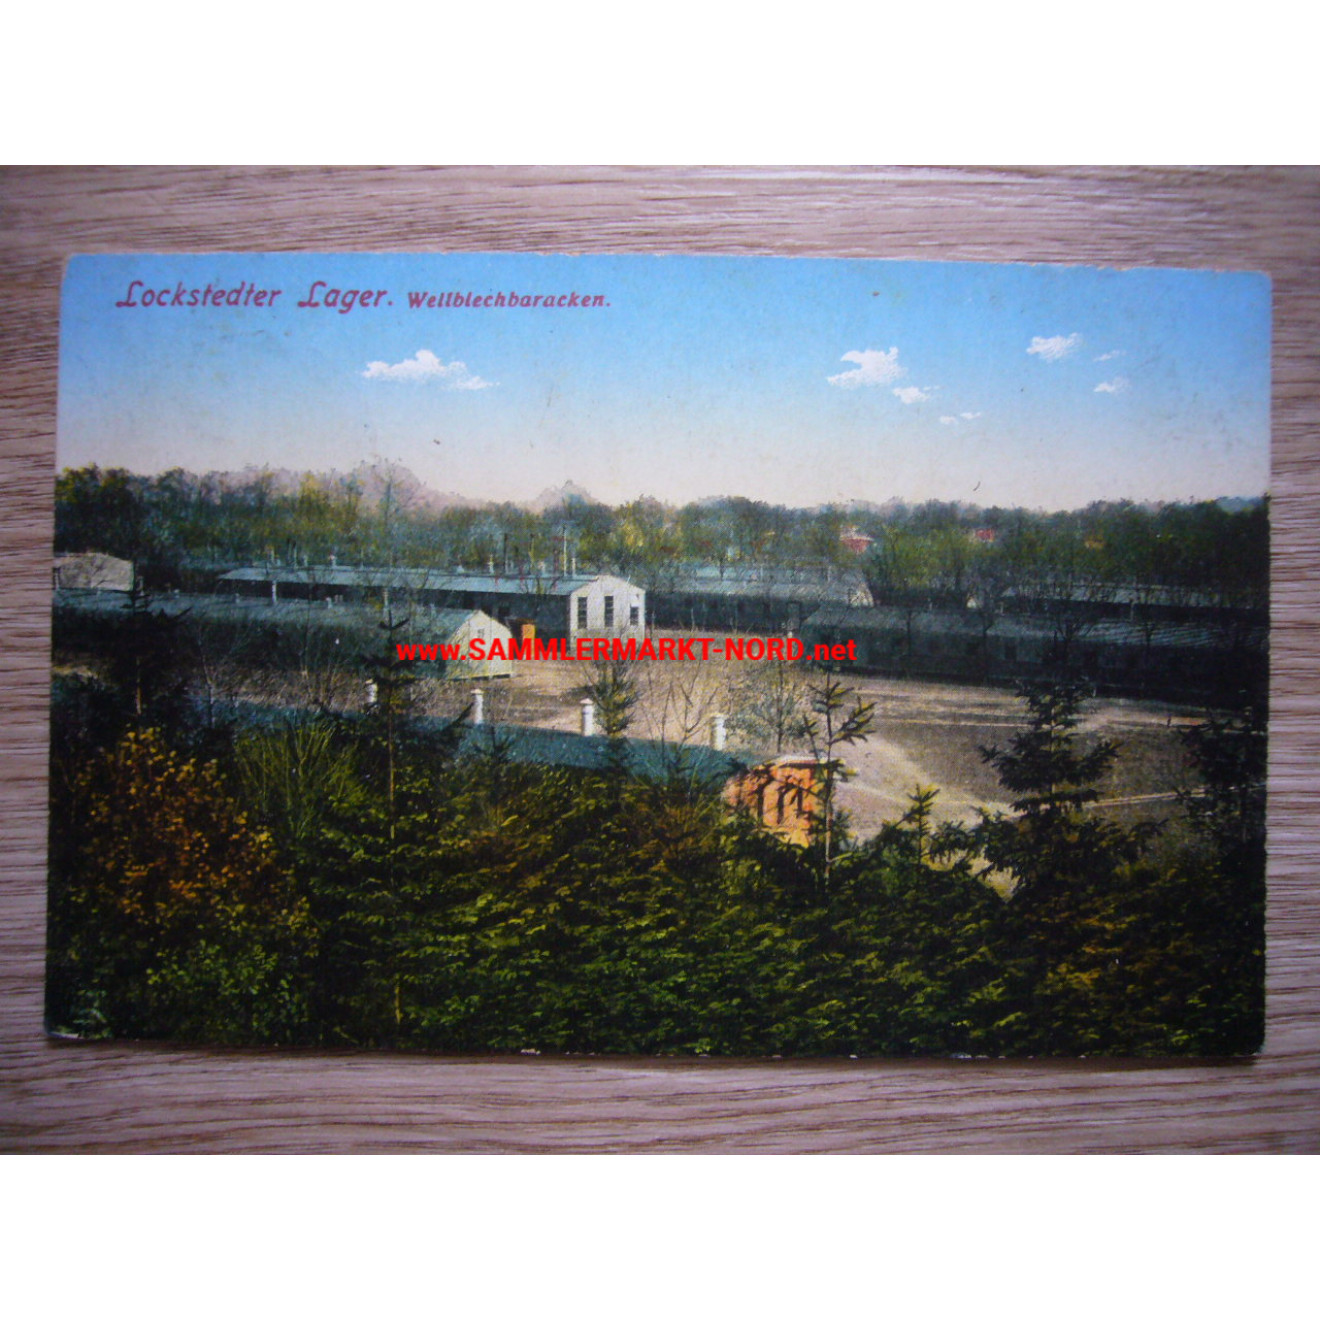 Lockstedter Lager - Wellblechbaracken - Postkarte